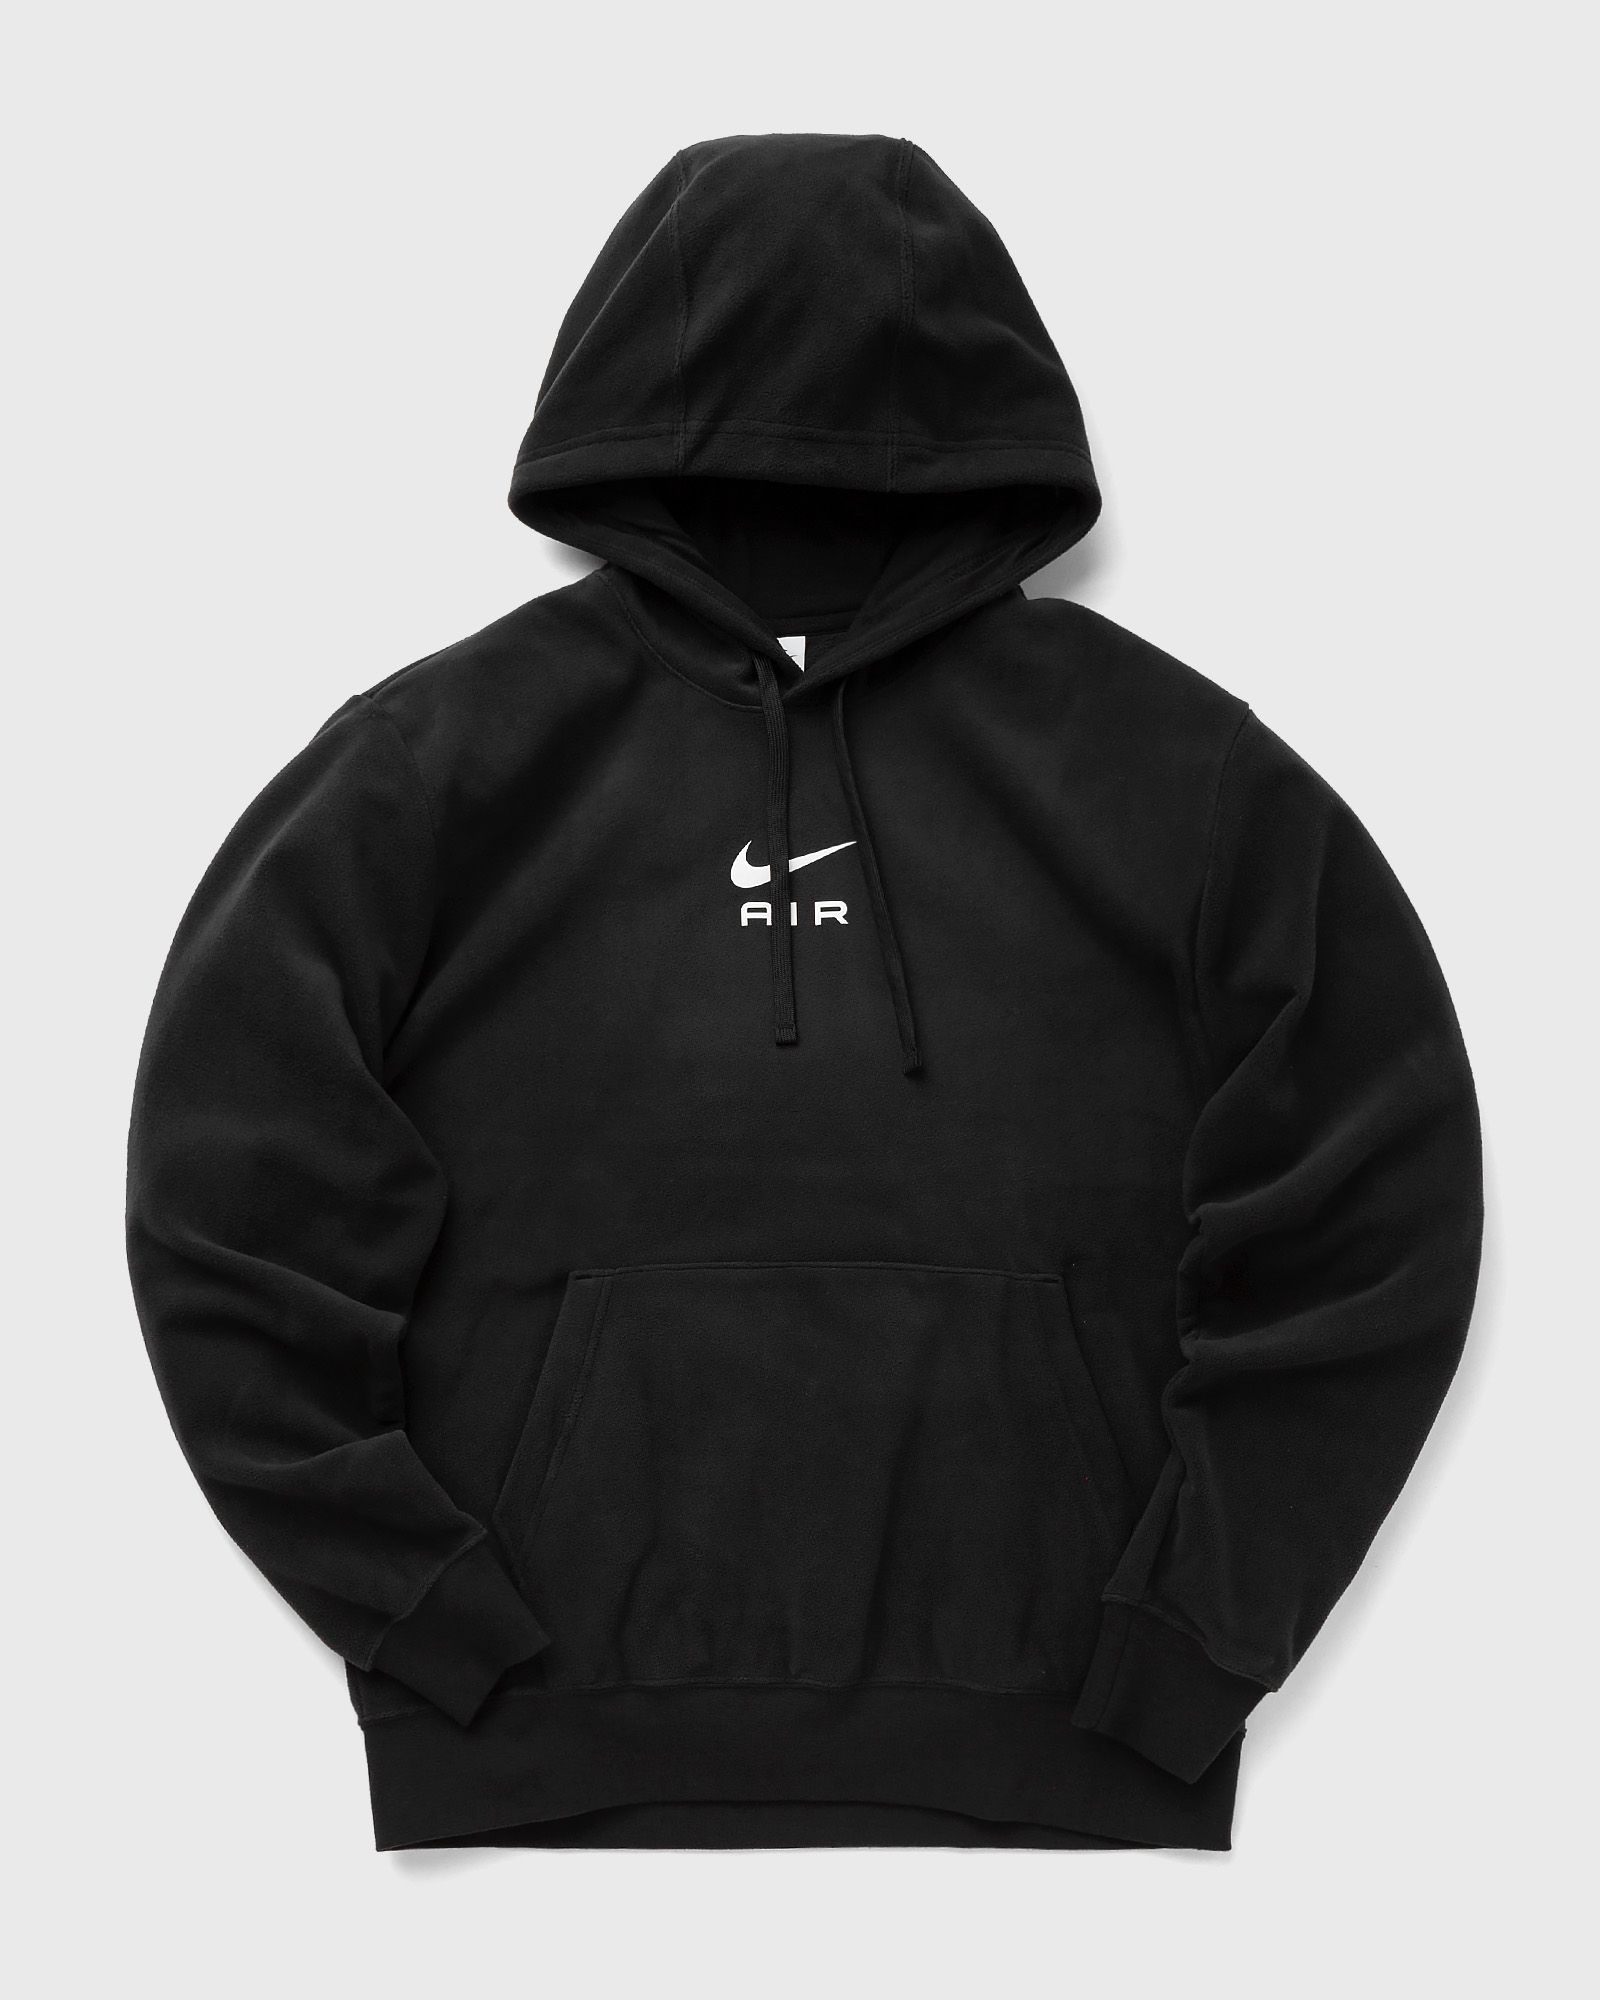 Nike - air men's pullover fleece hoodie men hoodies black in größe:s